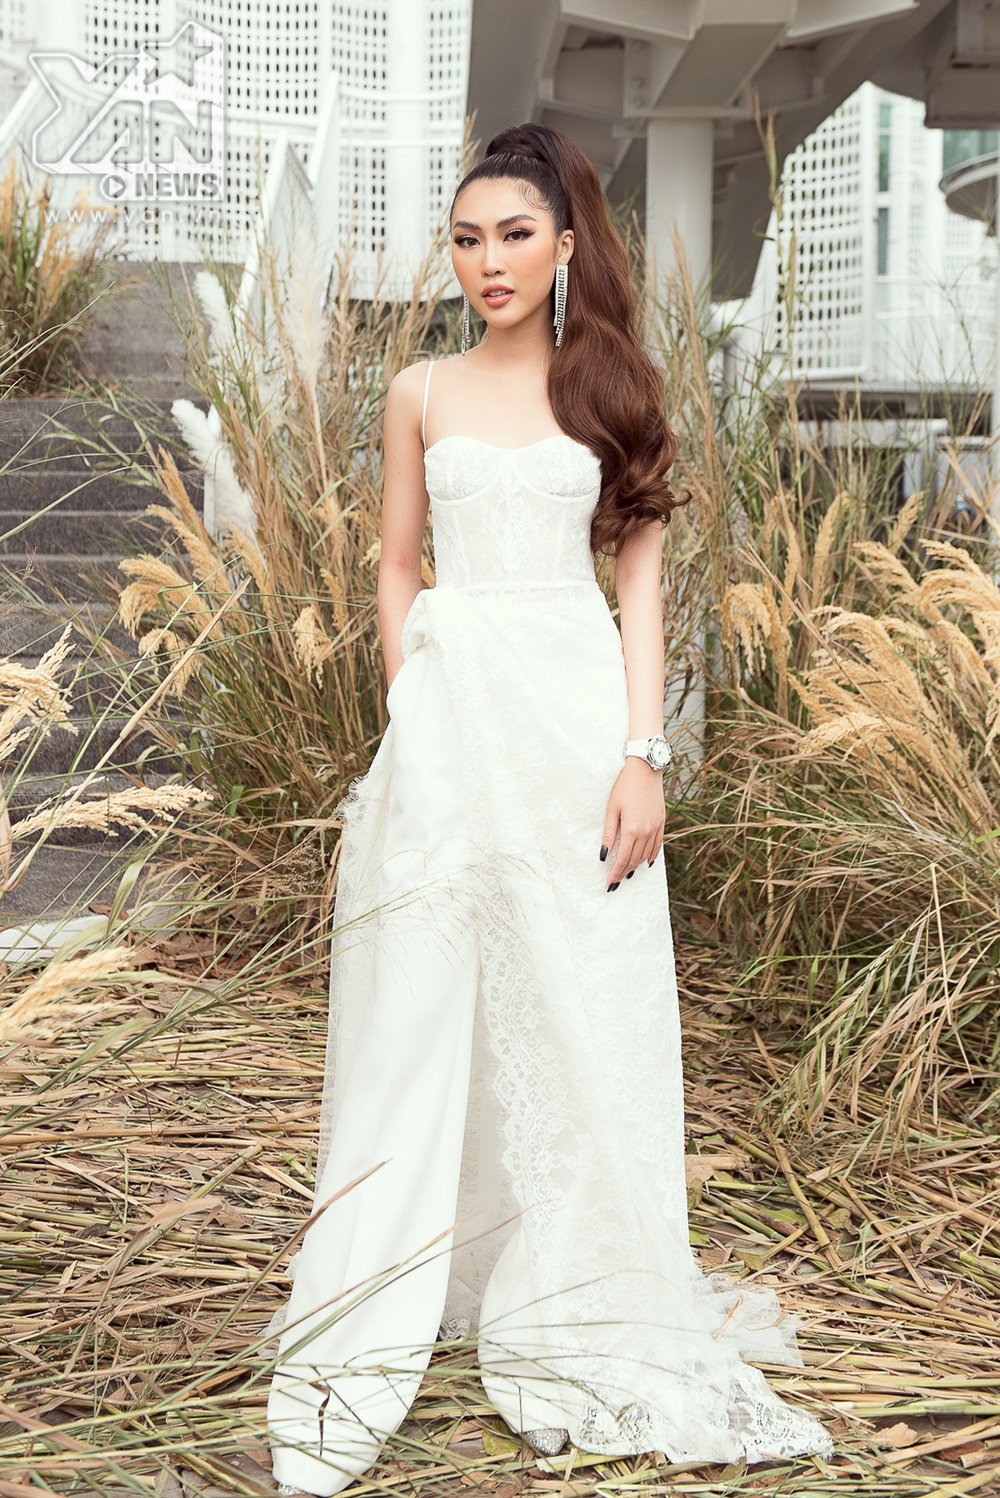  
Tường Linh cũng chọn cho mình bộ trang phục trắng ấn tượng.